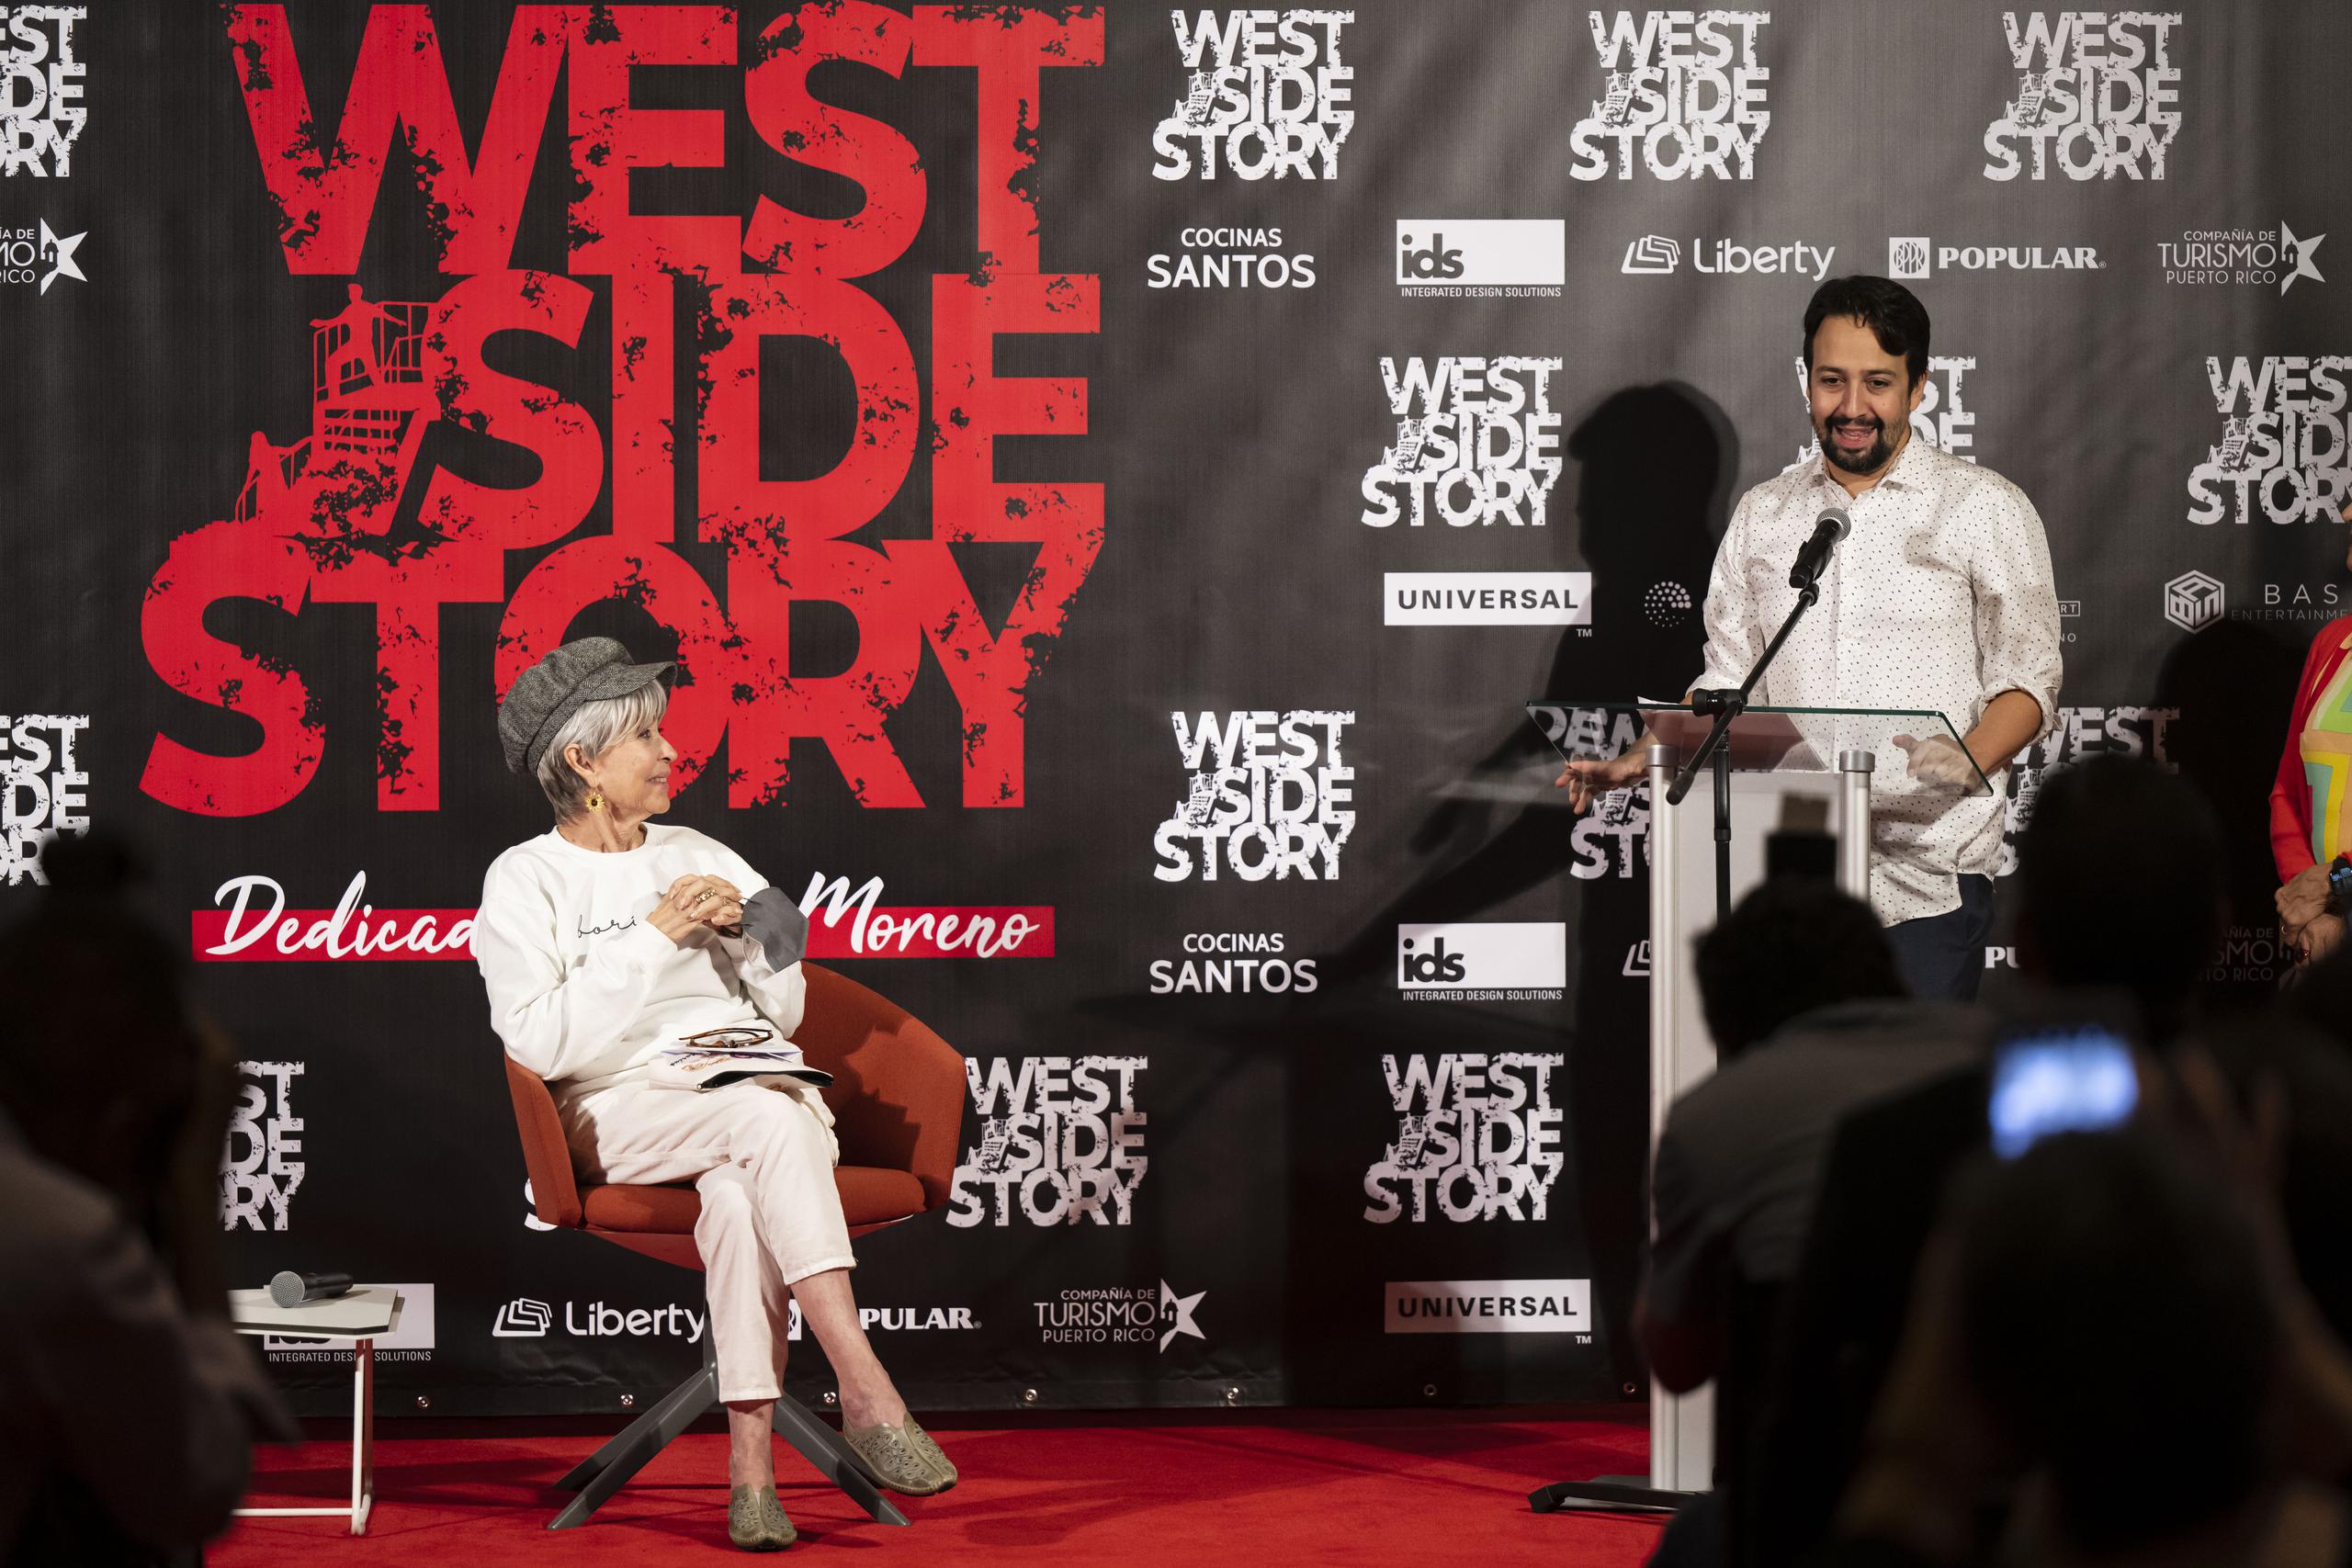 Lin-Manuel Miranda le confesó haber hecho uno de los personajes de "West Side Story" cuando cursaba el sexto grado.